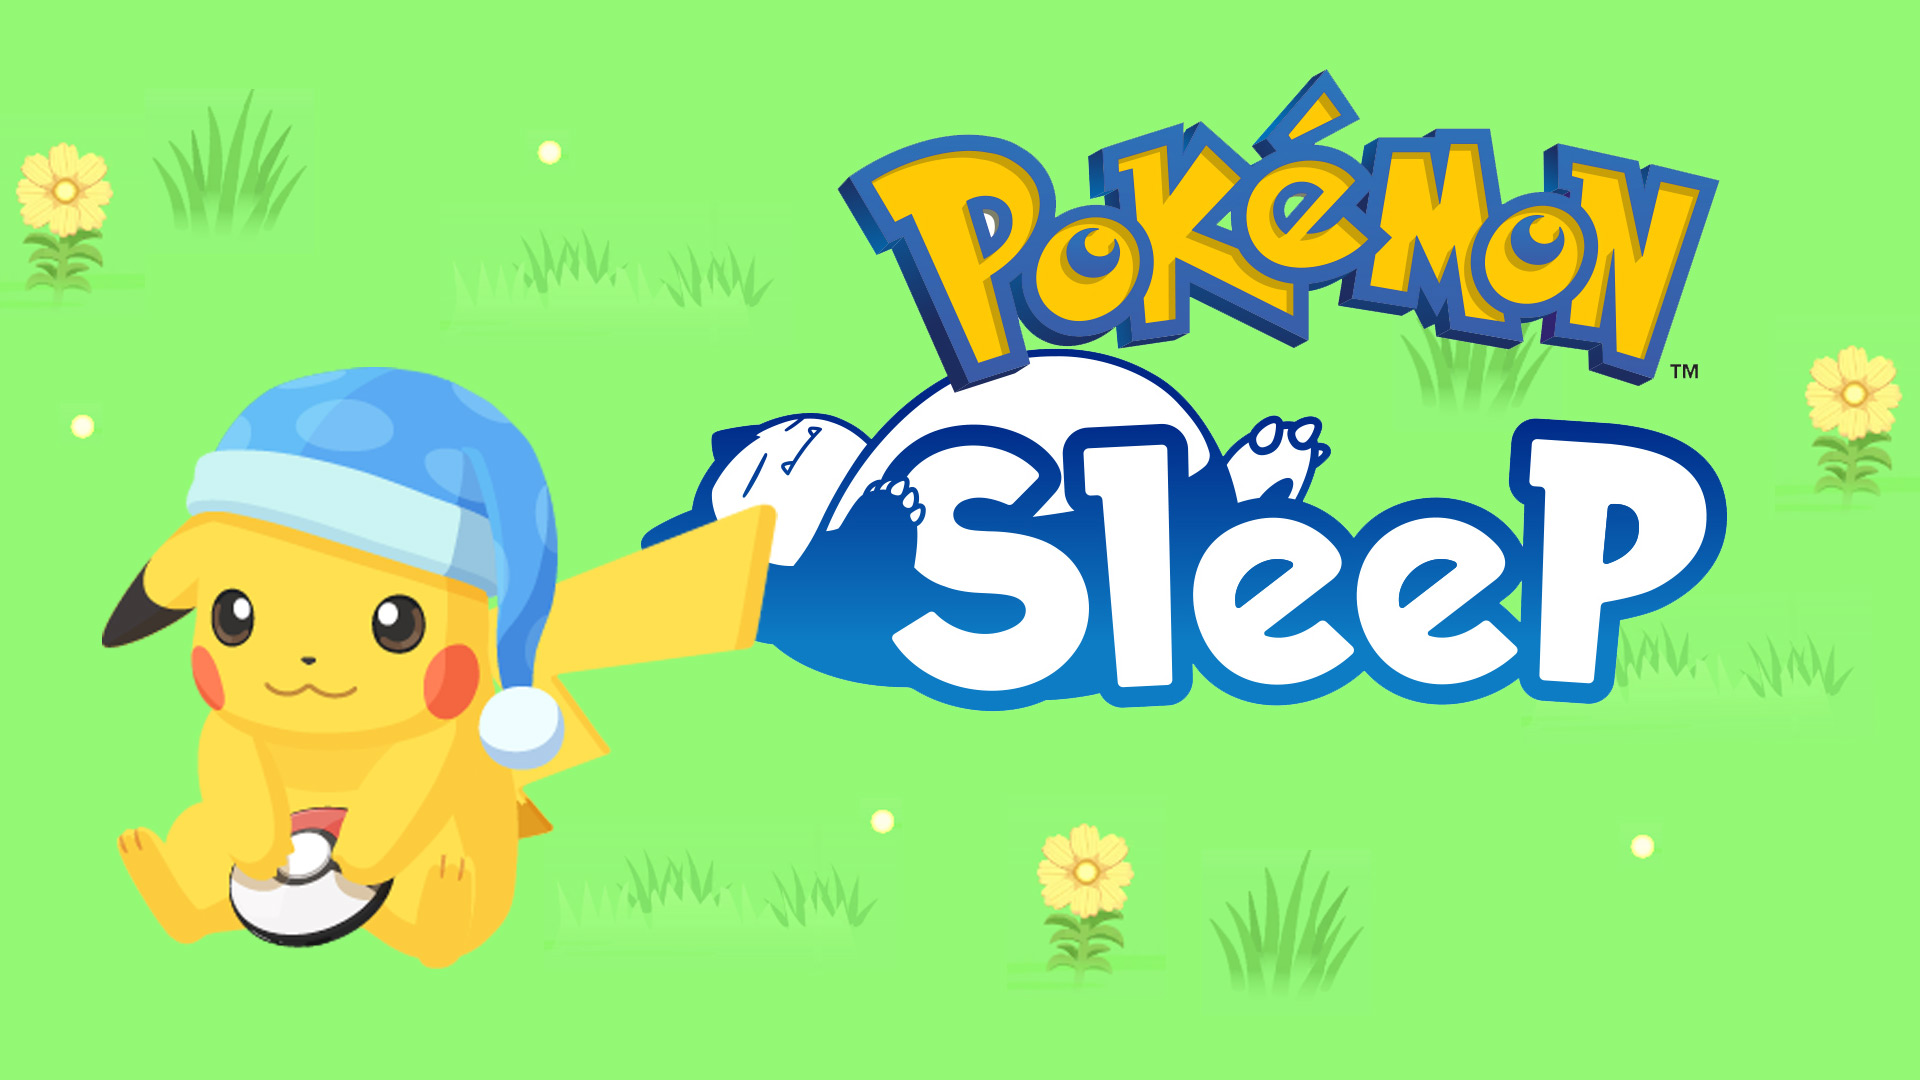 Pokémon Presents Pokémon Sleep